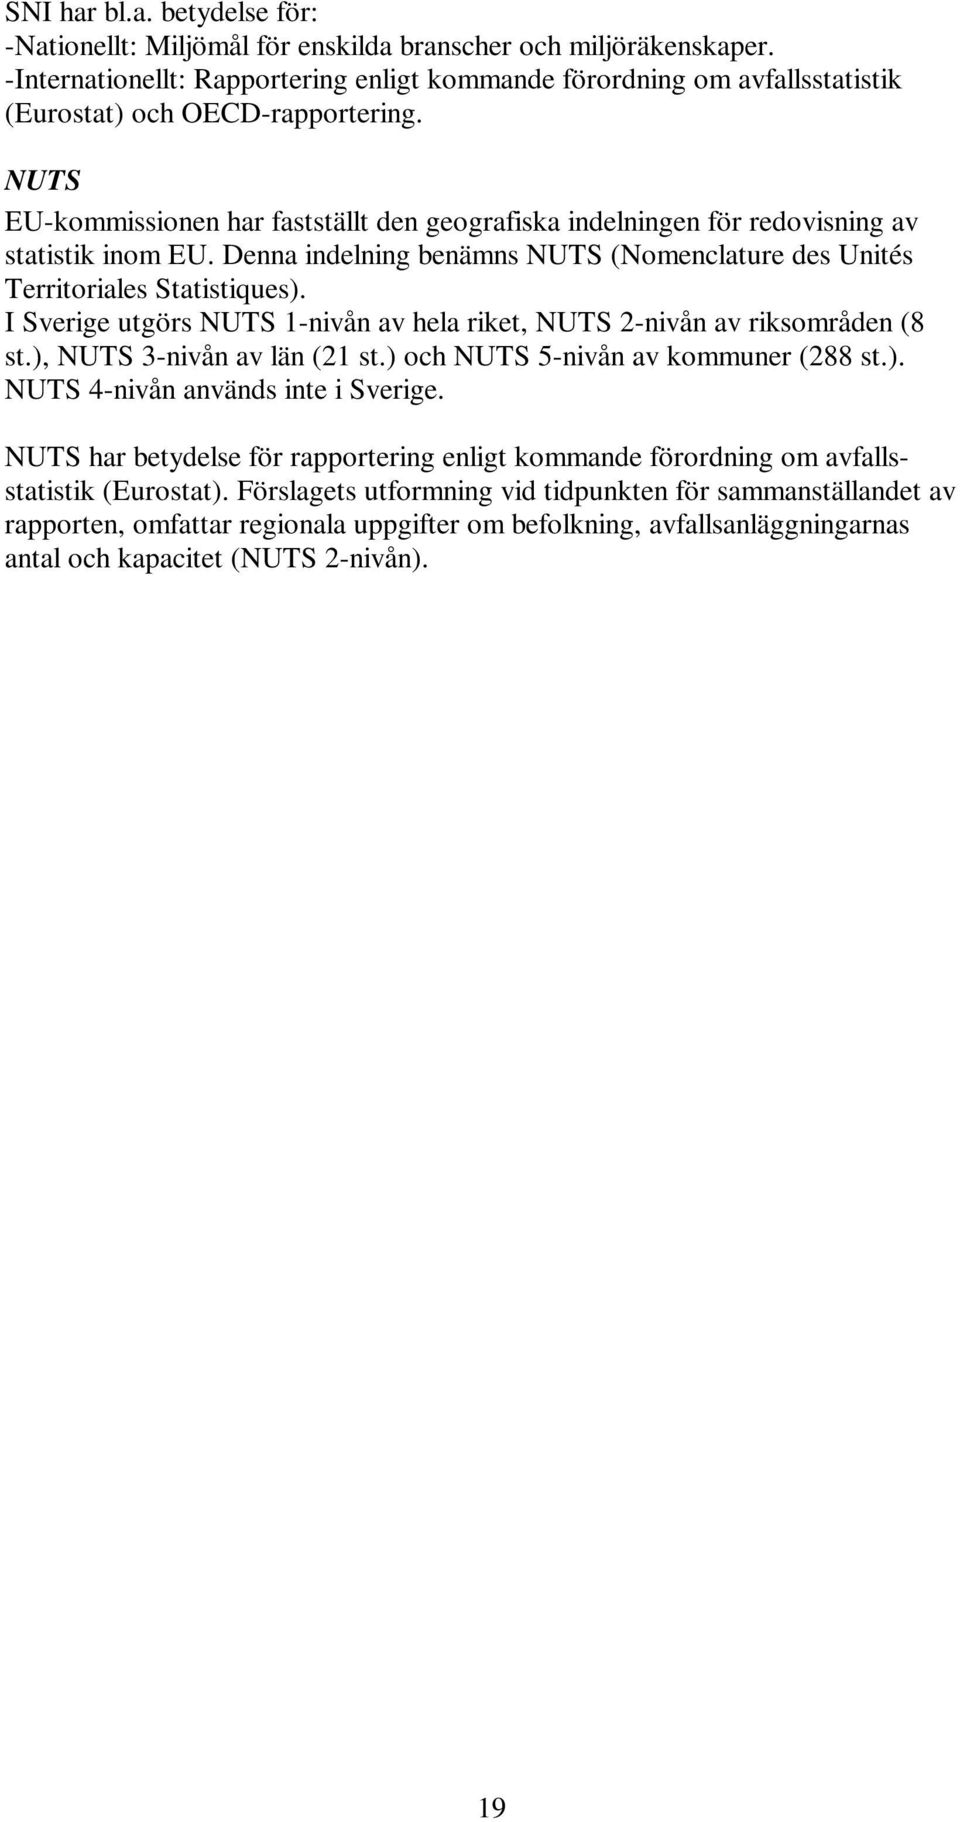 NUTS EU-kommissionen har fastställt den geografiska indelningen för redovisning av statistik inom EU. Denna indelning benämns NUTS (Nomenclature des Unités Territoriales Statistiques).